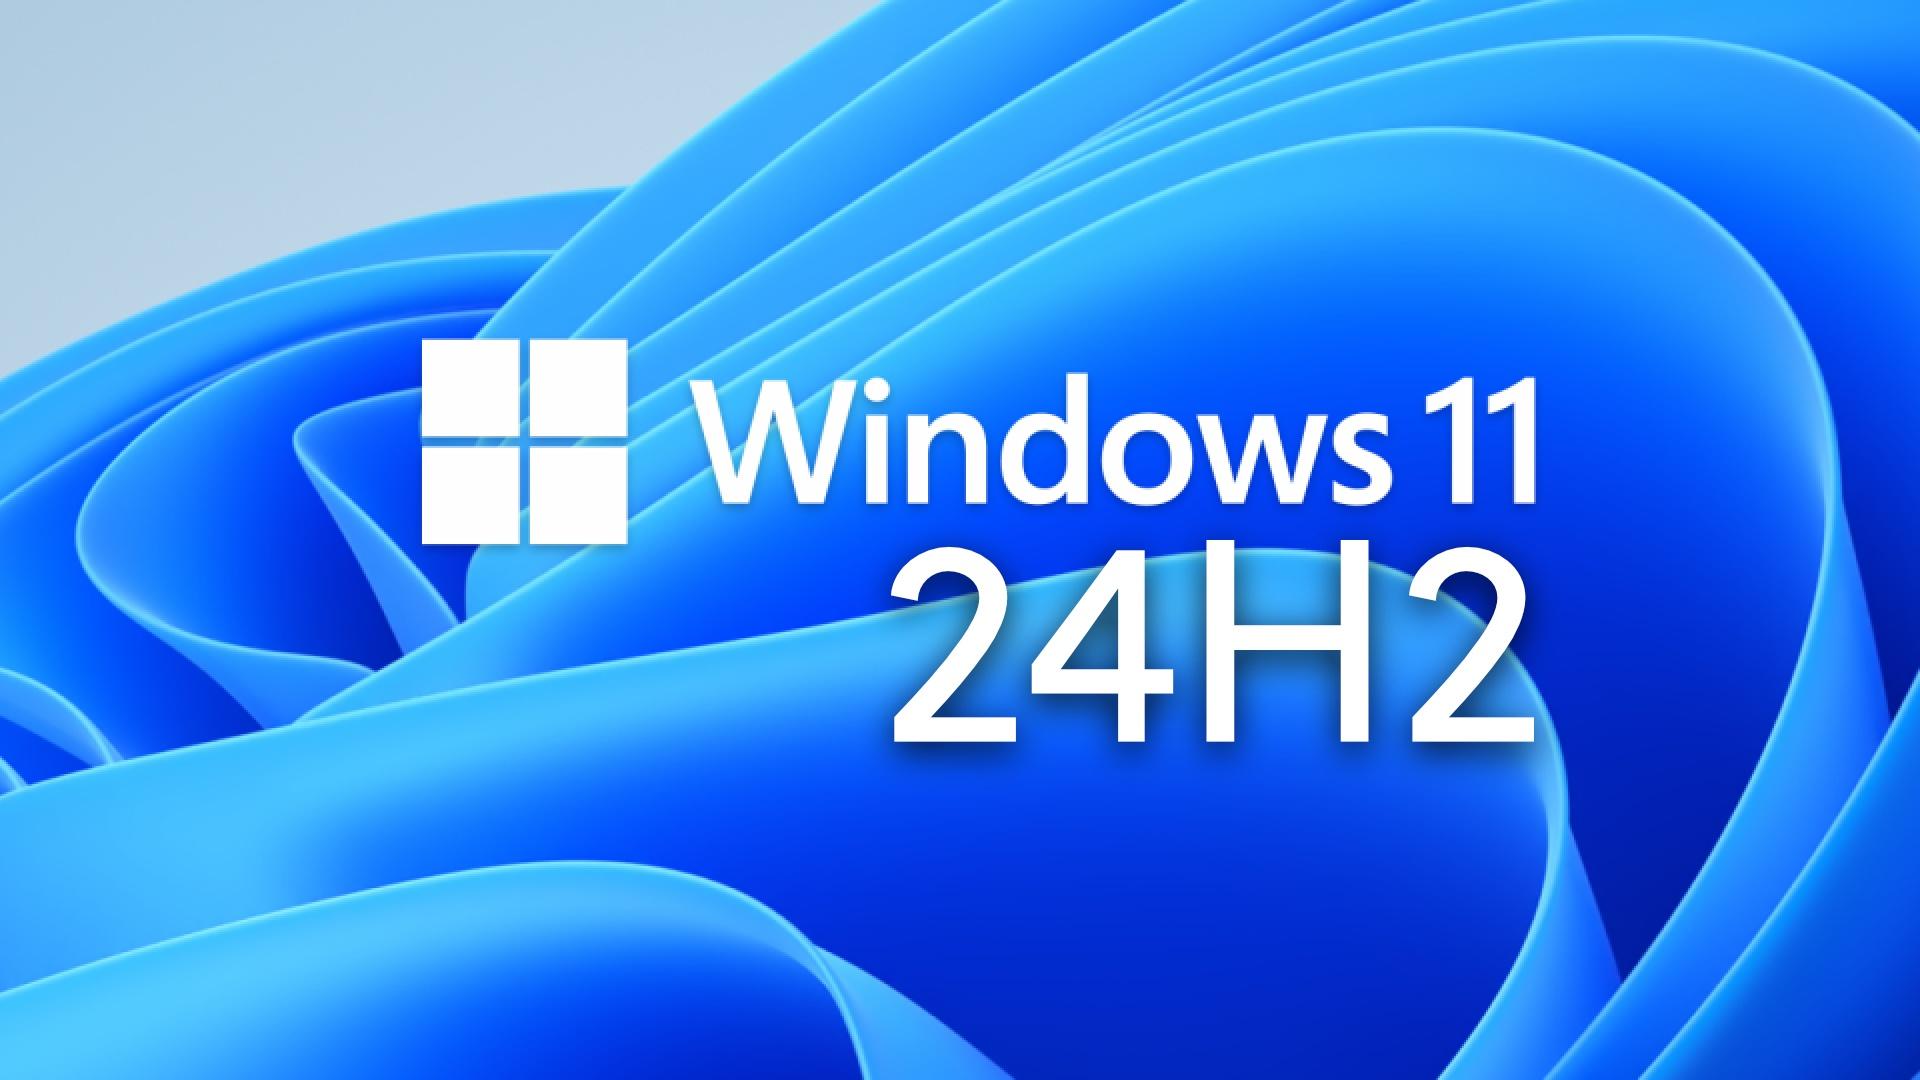 Meer informatie over "Windows 11 24H2: Update Eind Dit Jaar Beschikbaar voor Intel- en AMD-pc's"